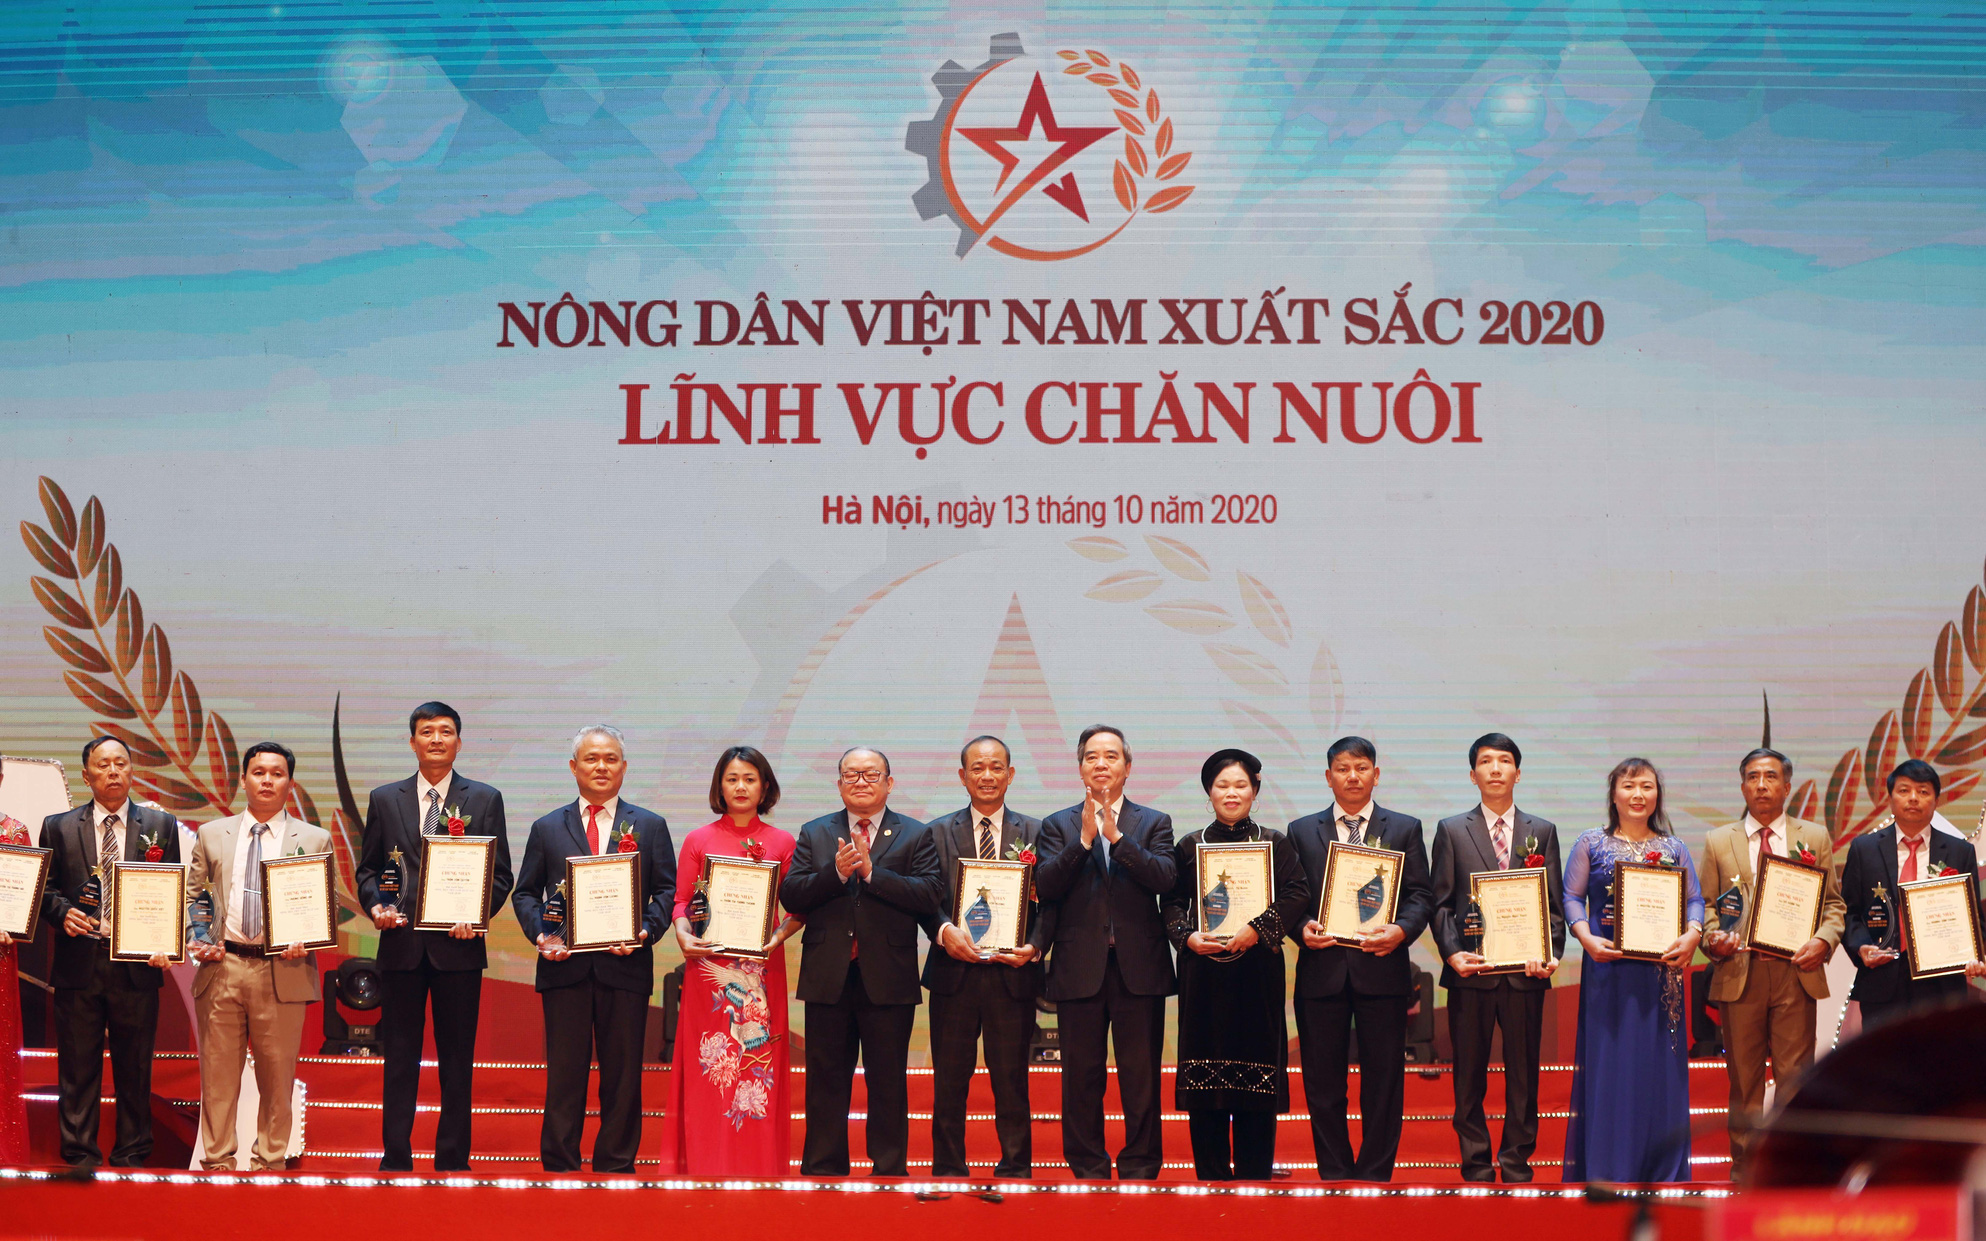 Ảnh: Toàn cảnh Lễ tôn vinh và trao danh hiệu 63 Nông dân Việt Nam xuất sắc 2020